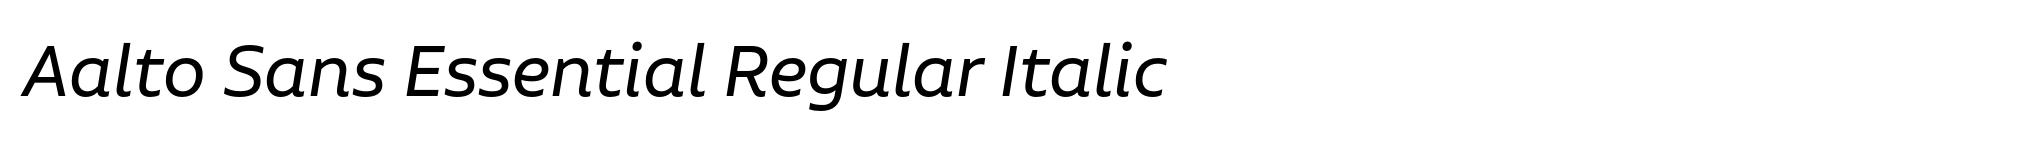 Aalto Sans Essential Regular Italic image